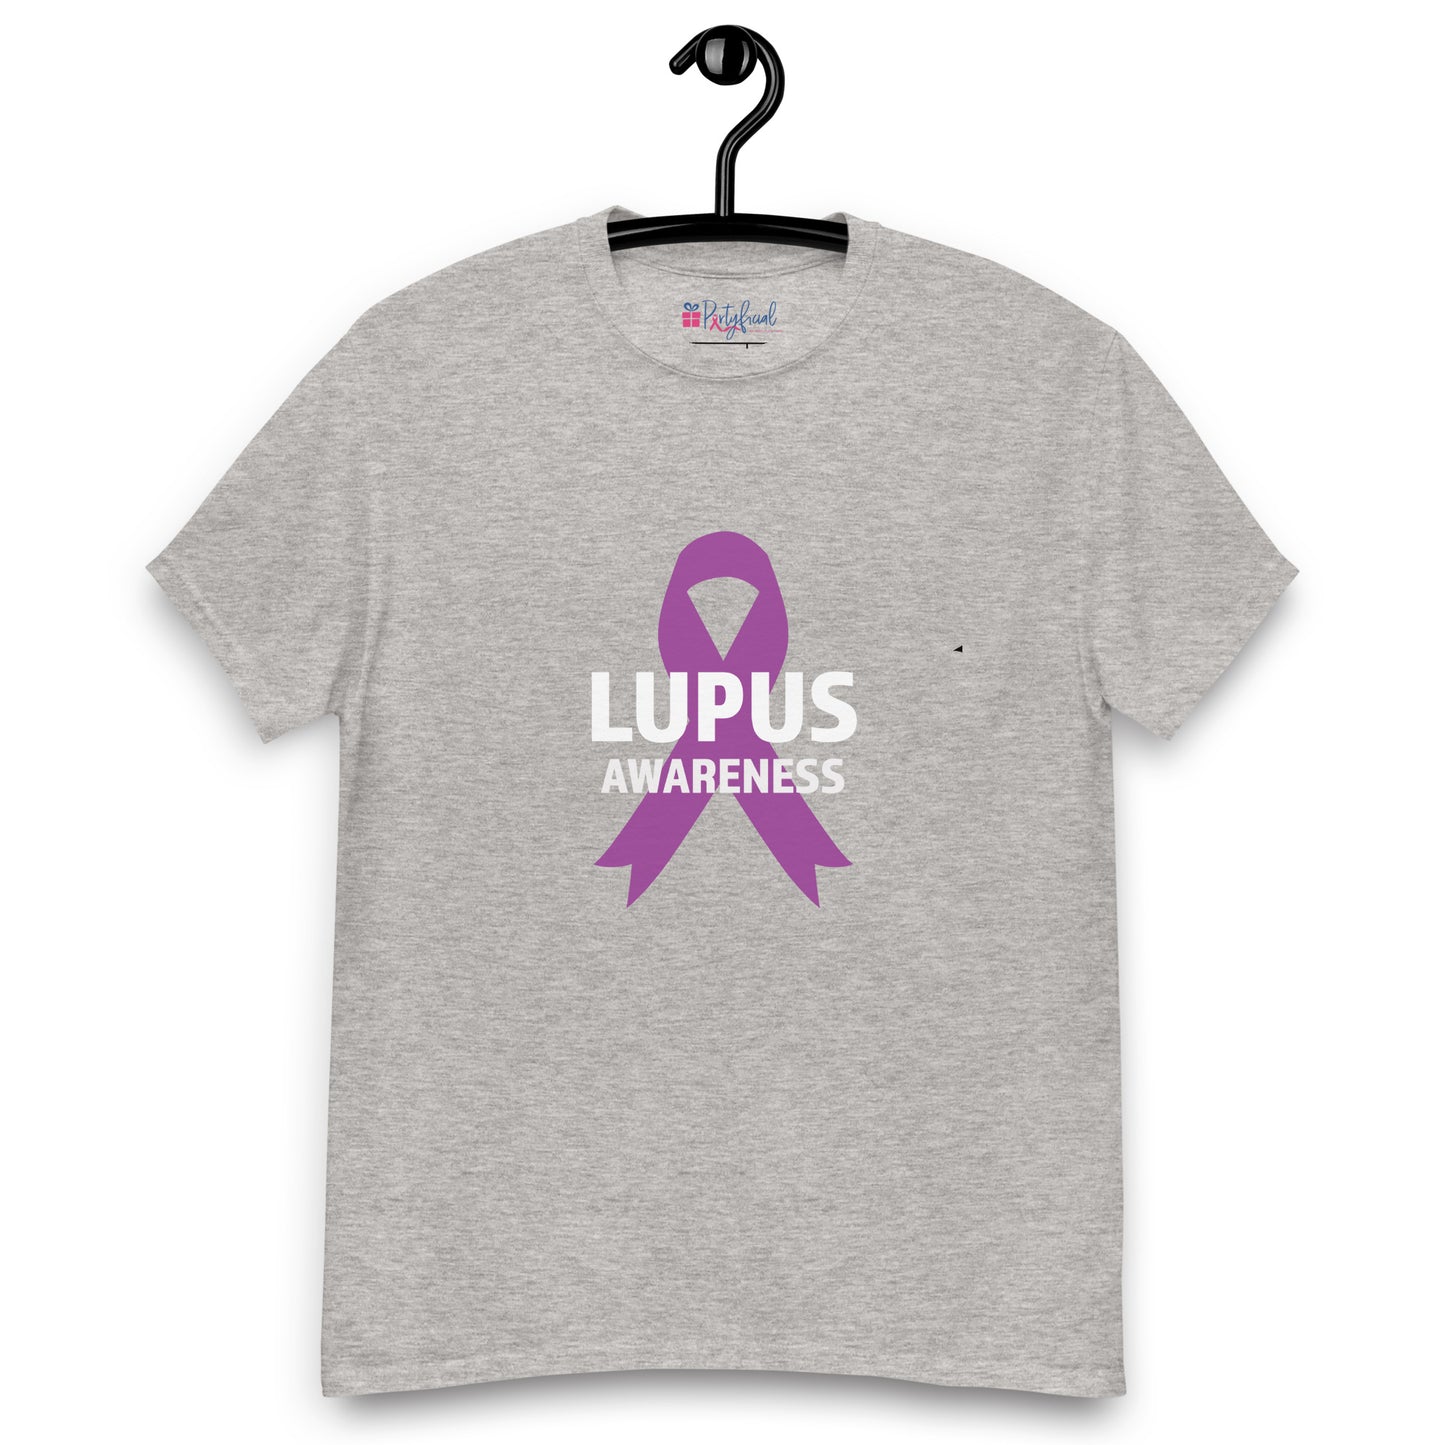 Lupus Awareness Ribbon tee